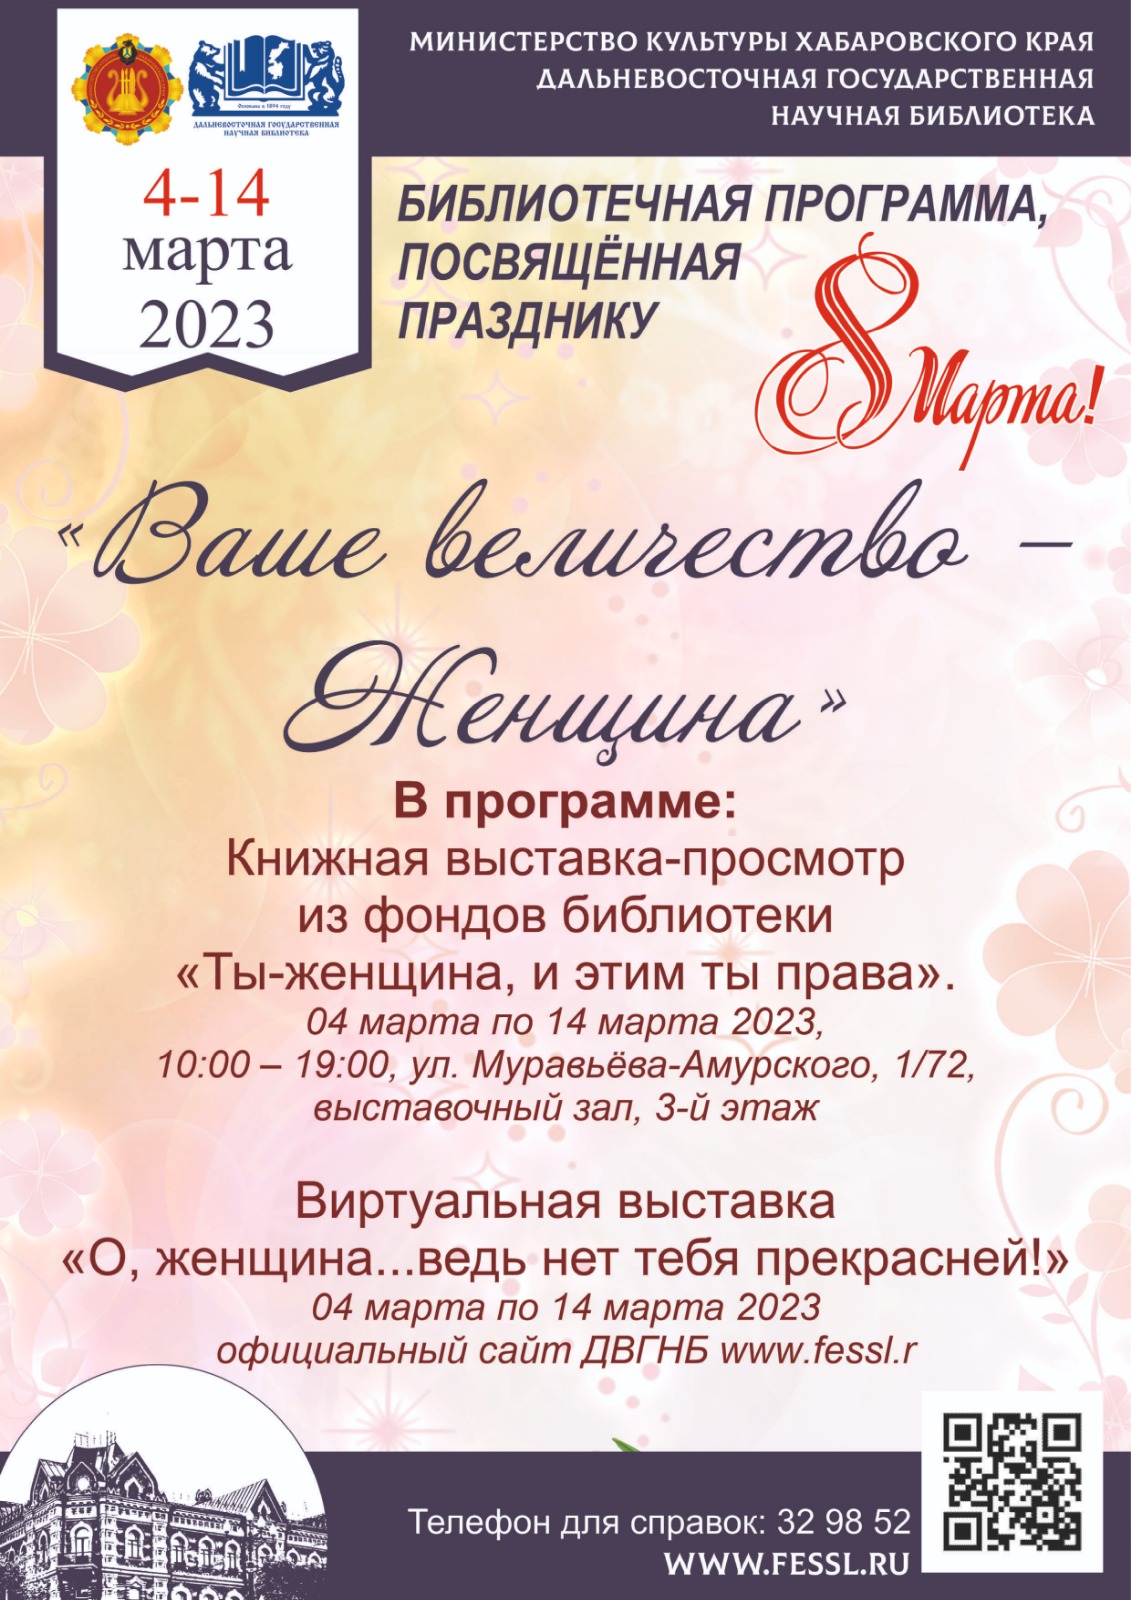 Библиотека поздравляет милых дам с 8 марта и дарит праздничную программу «Ваше величество – Женщина».